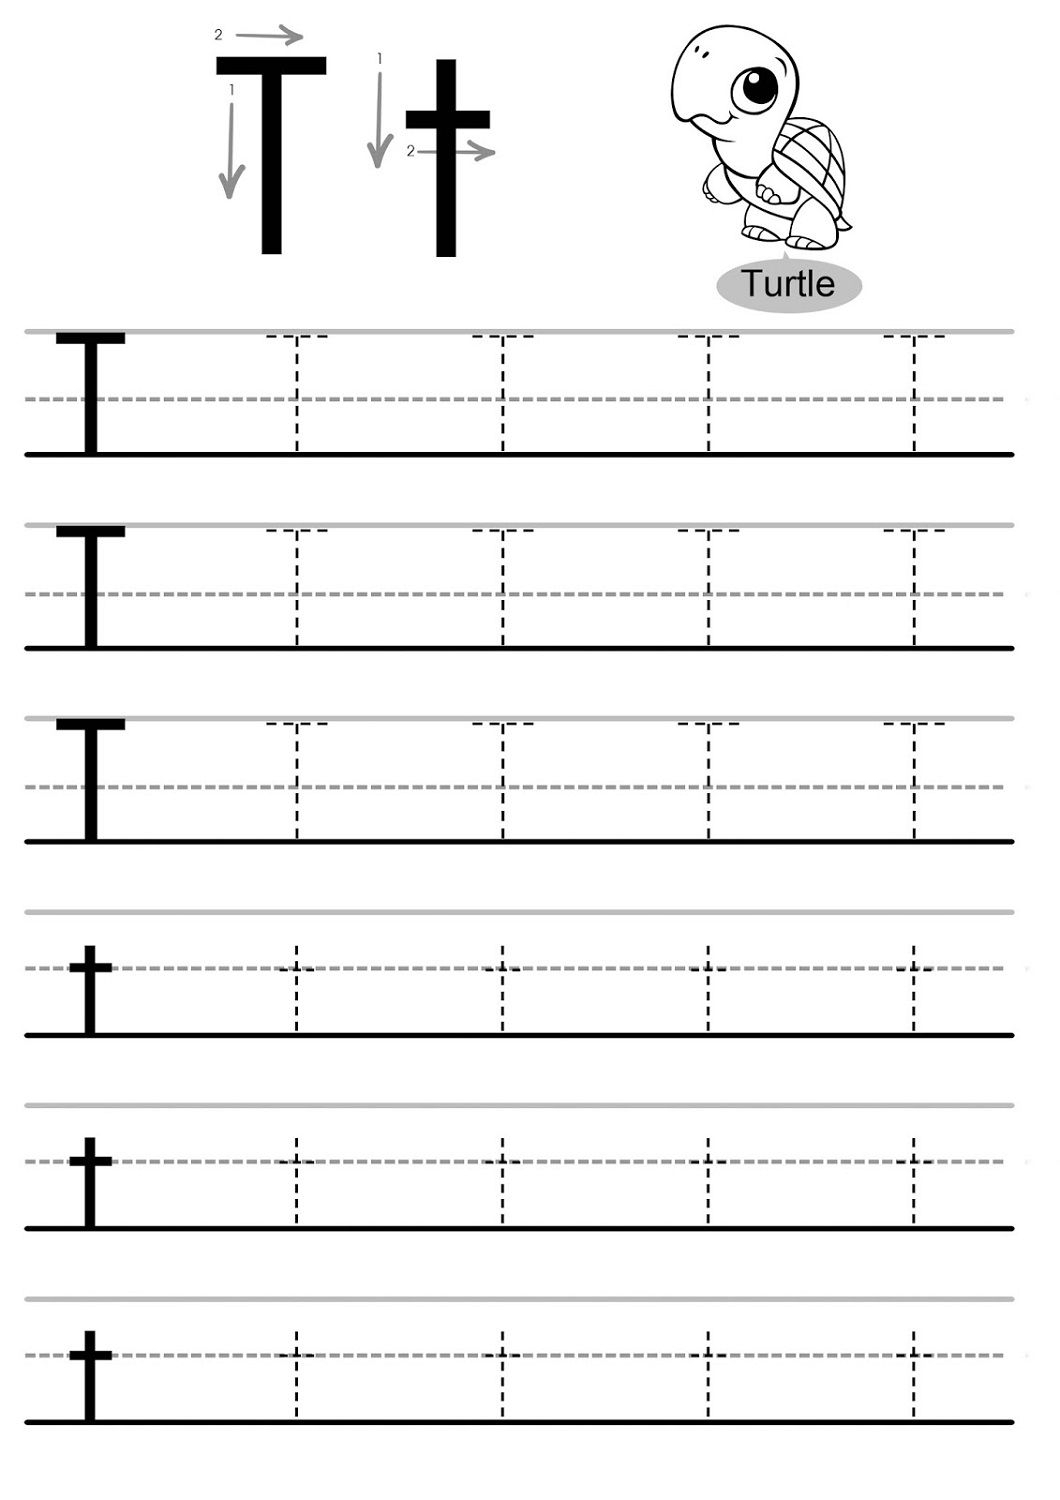 Traceable Letter Worksheets - Kids Learning Activity regarding Tracing Letter I Worksheets For Kindergarten